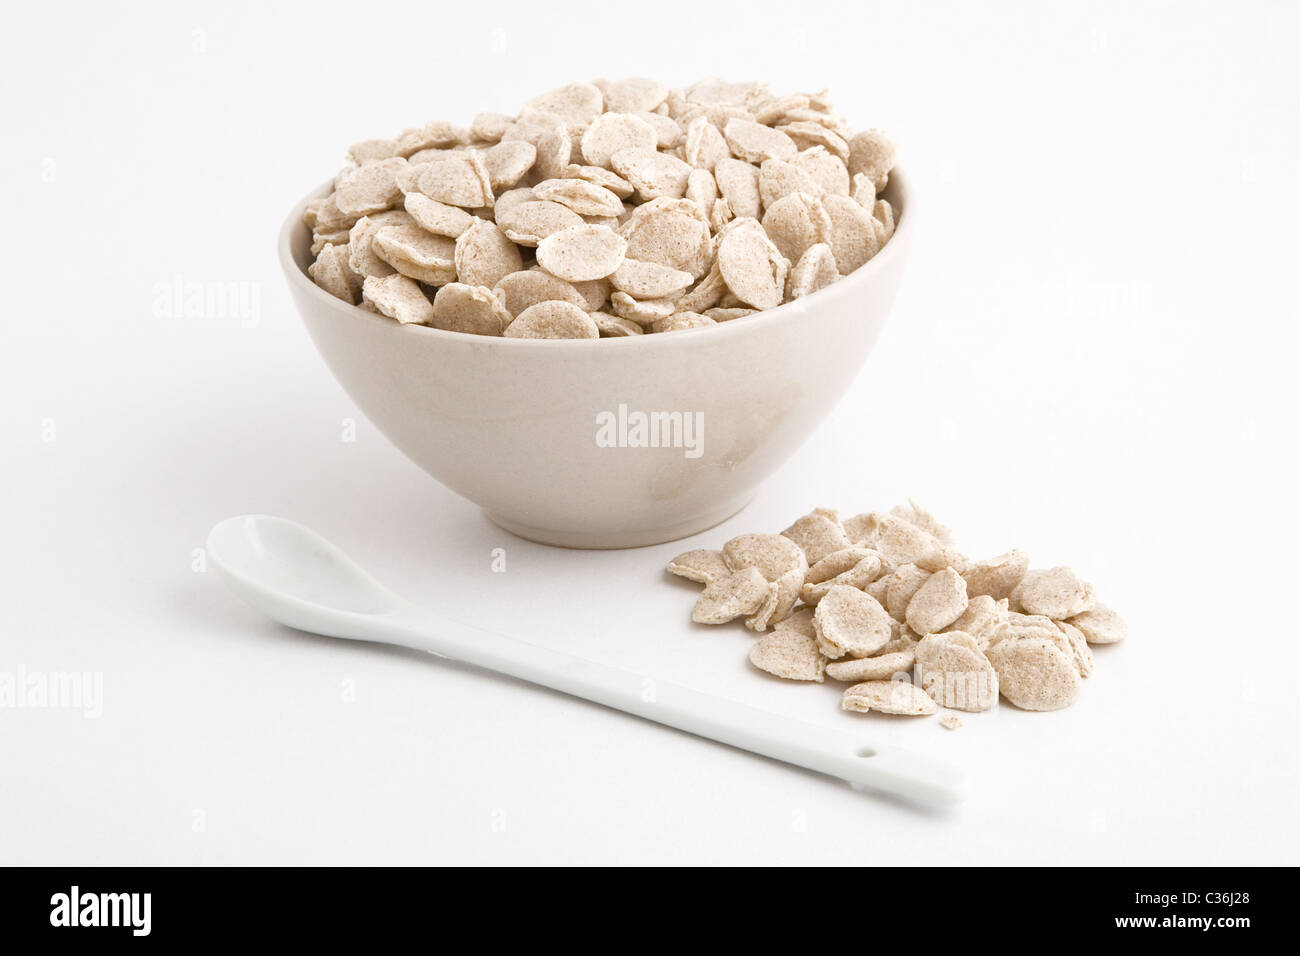 Vista frontal del tazón de cereales sobre fondo blanco. Foto de stock